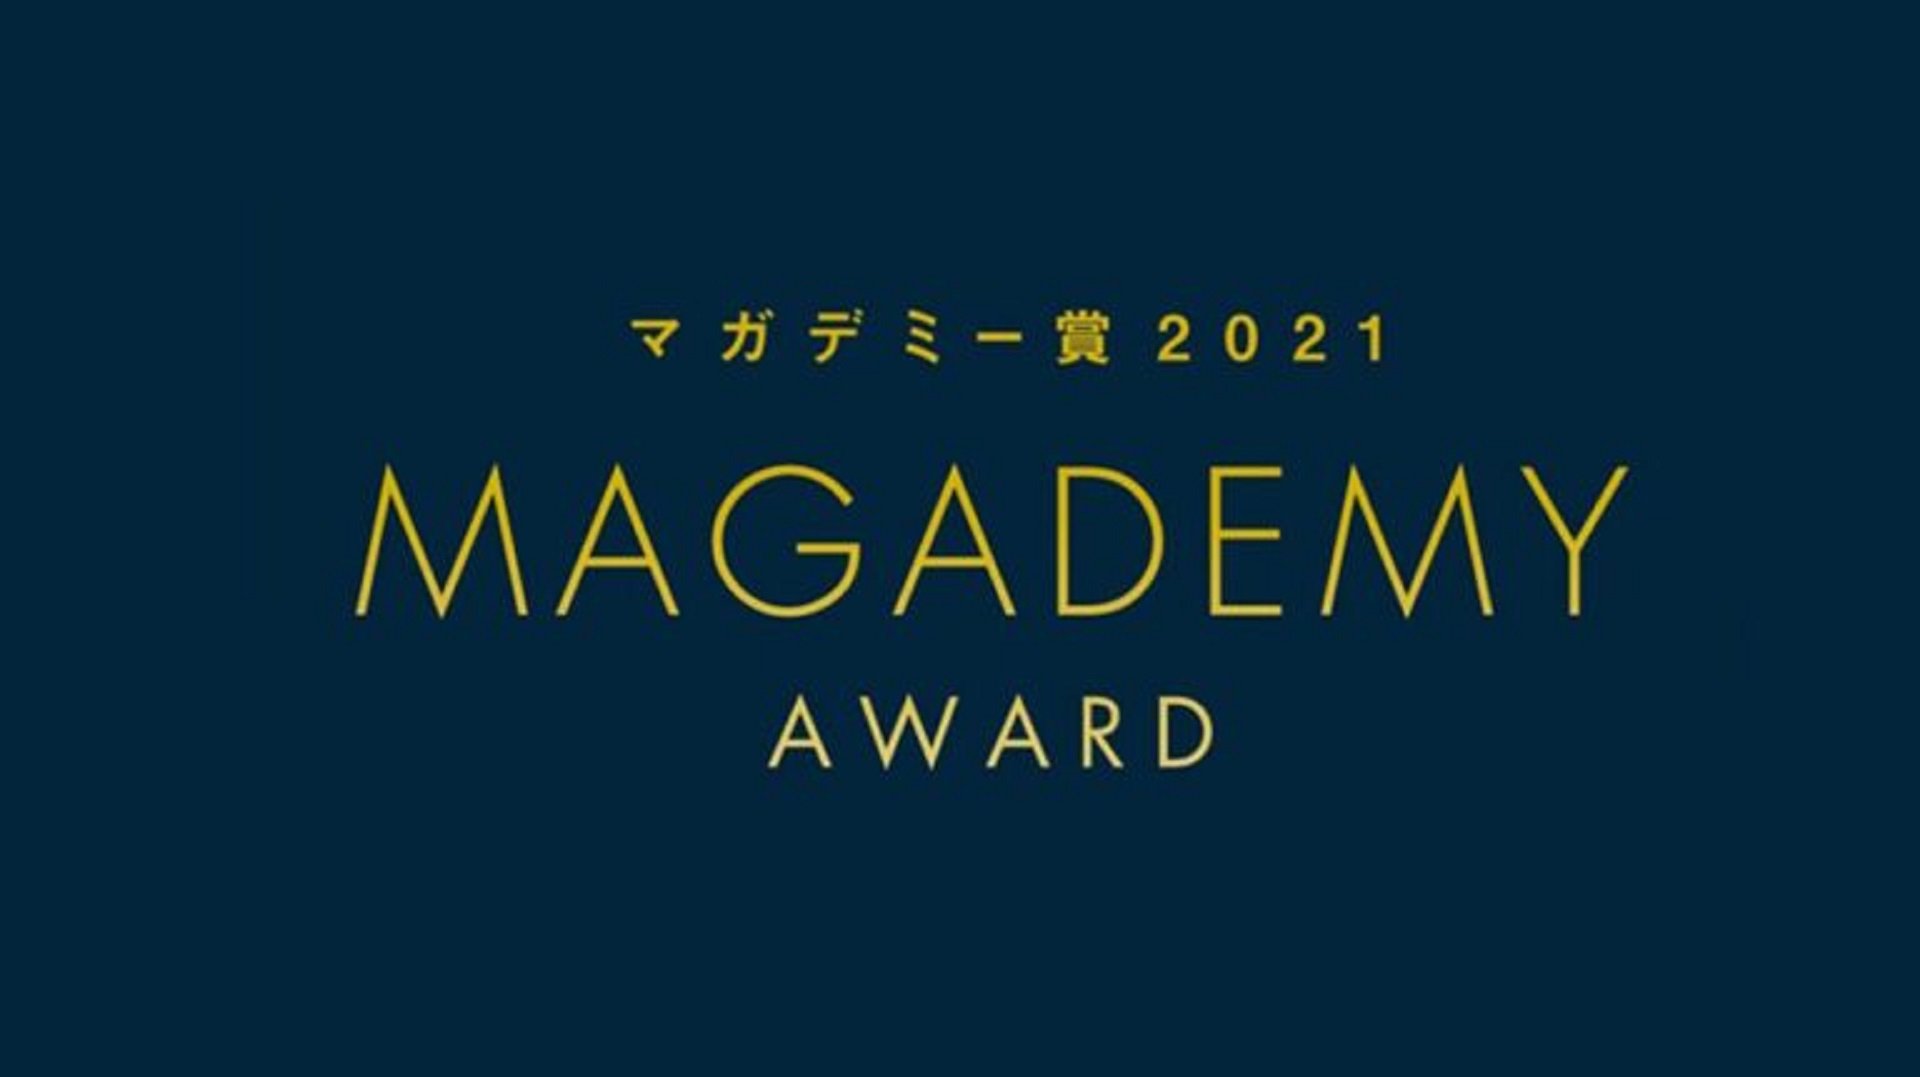 Magademy-Awards-768x431